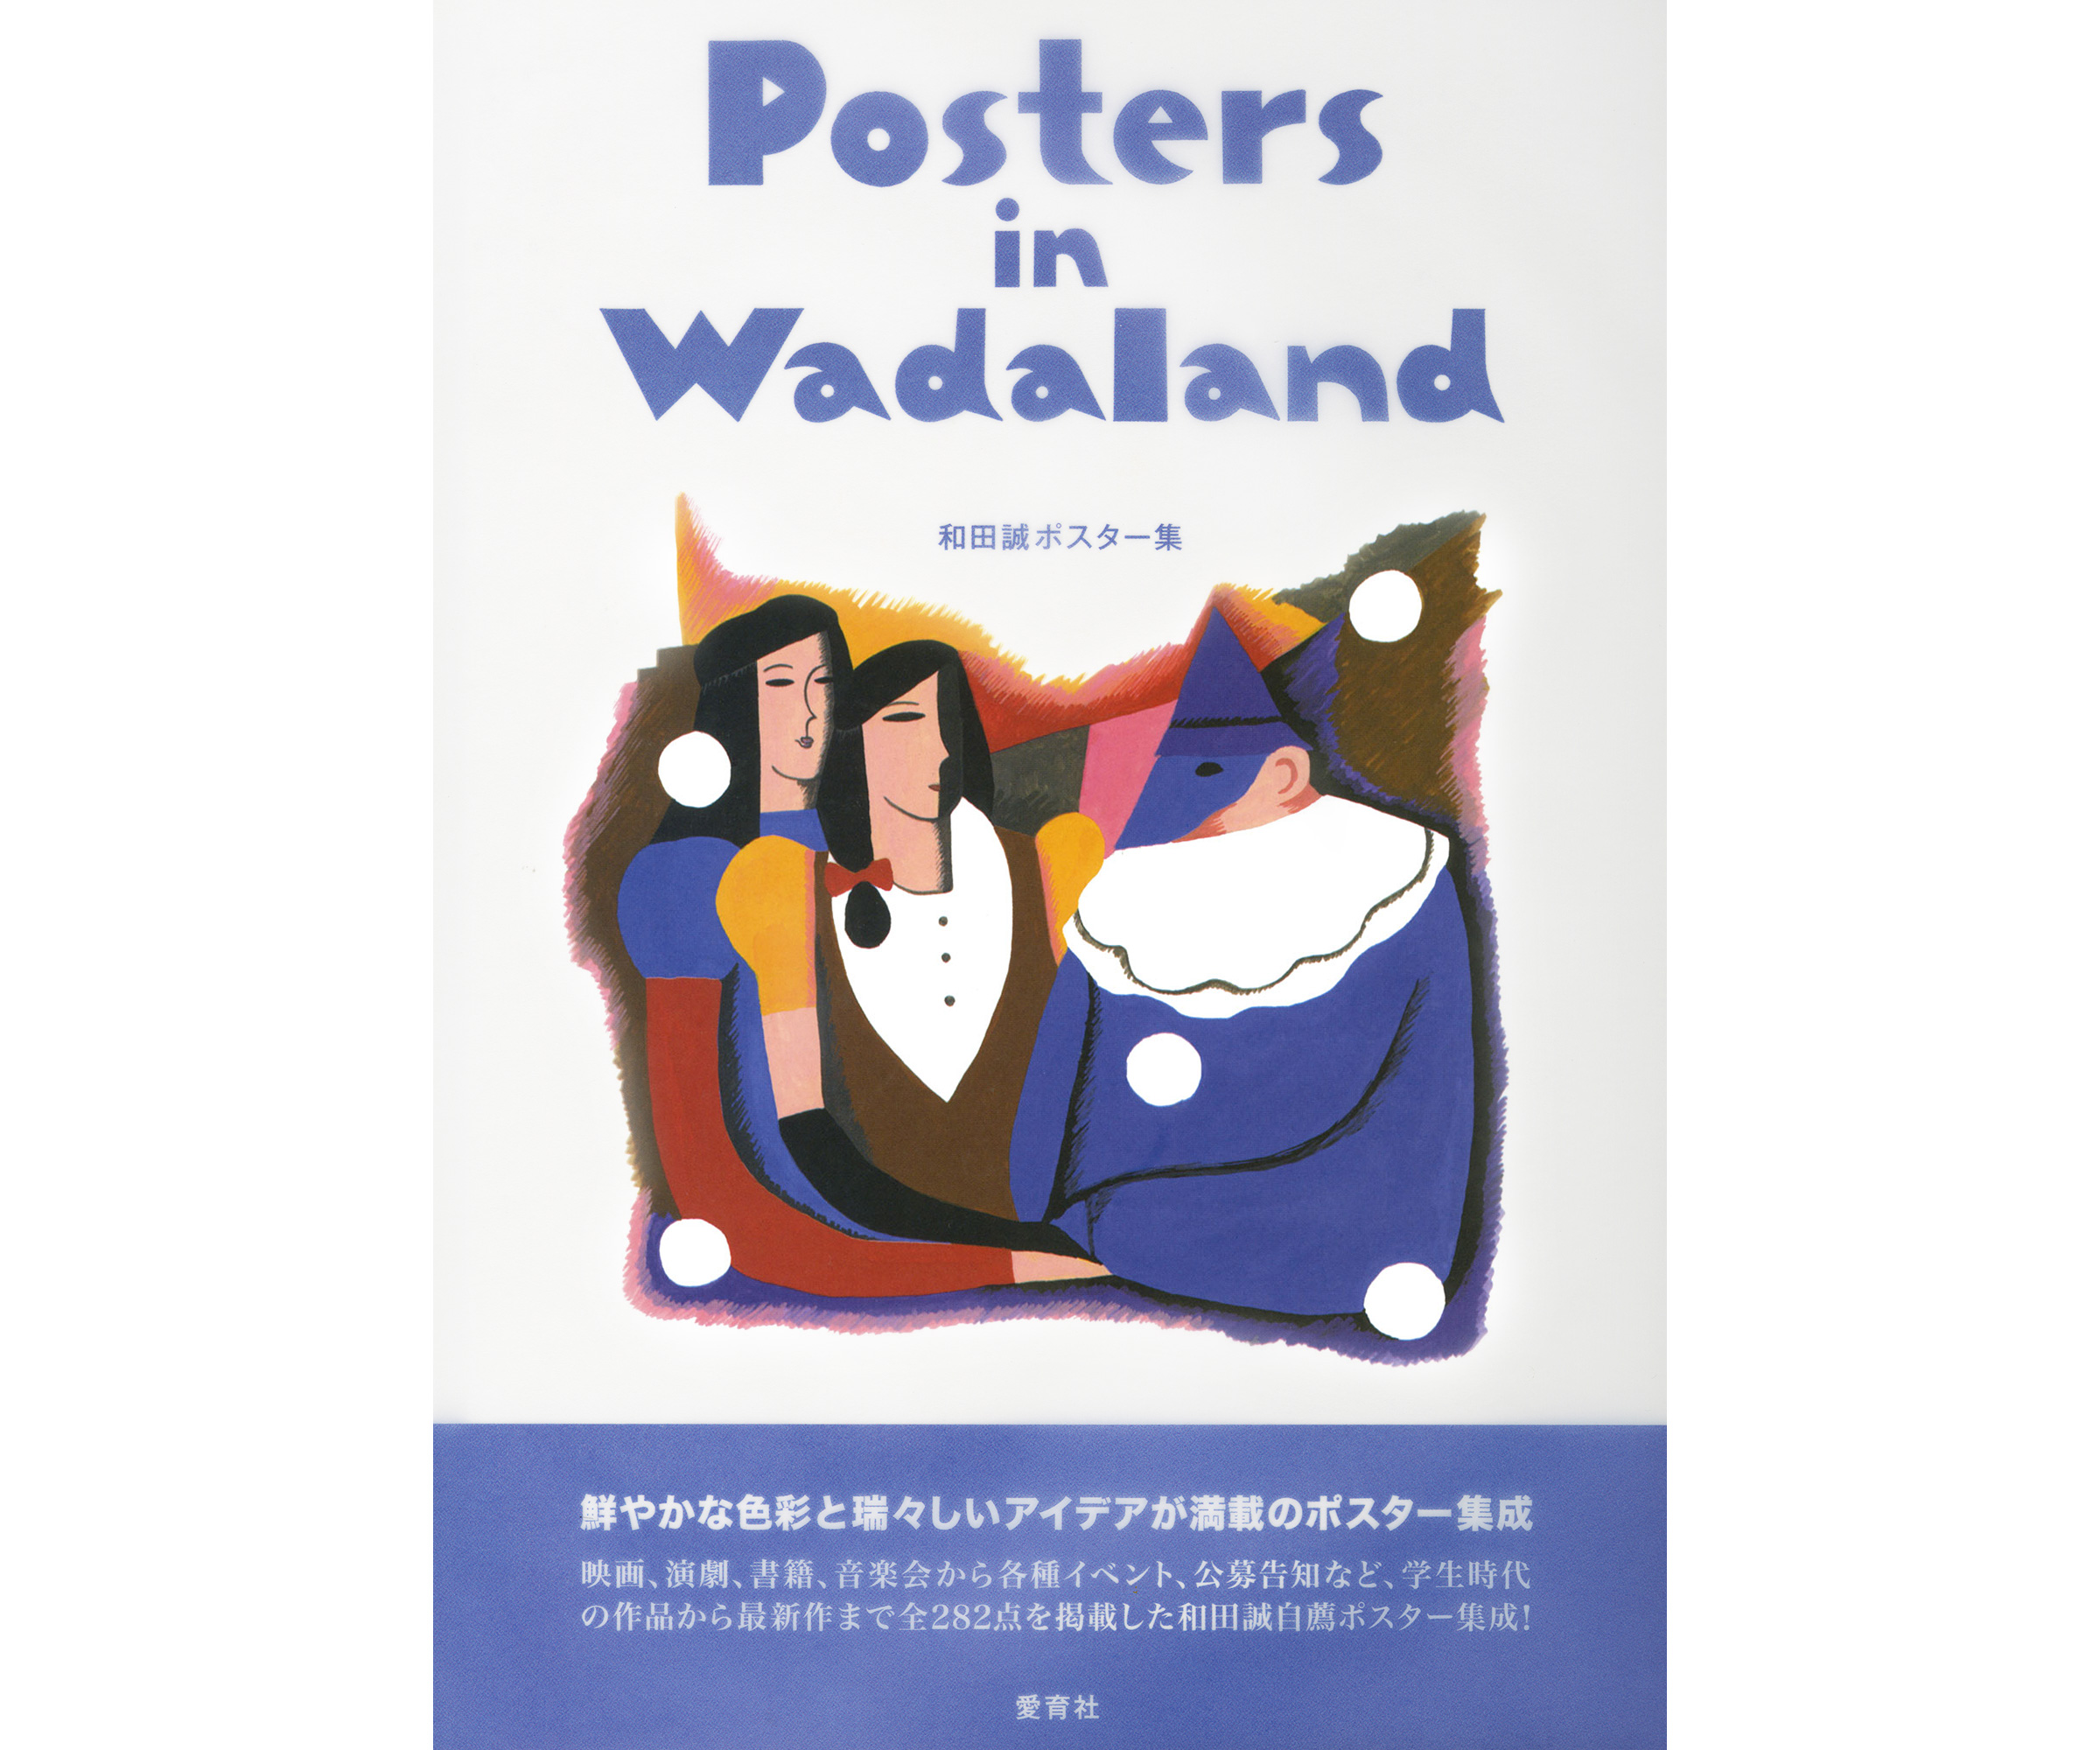 イラストレーター 和田誠 自著「Posters in Wadaland」